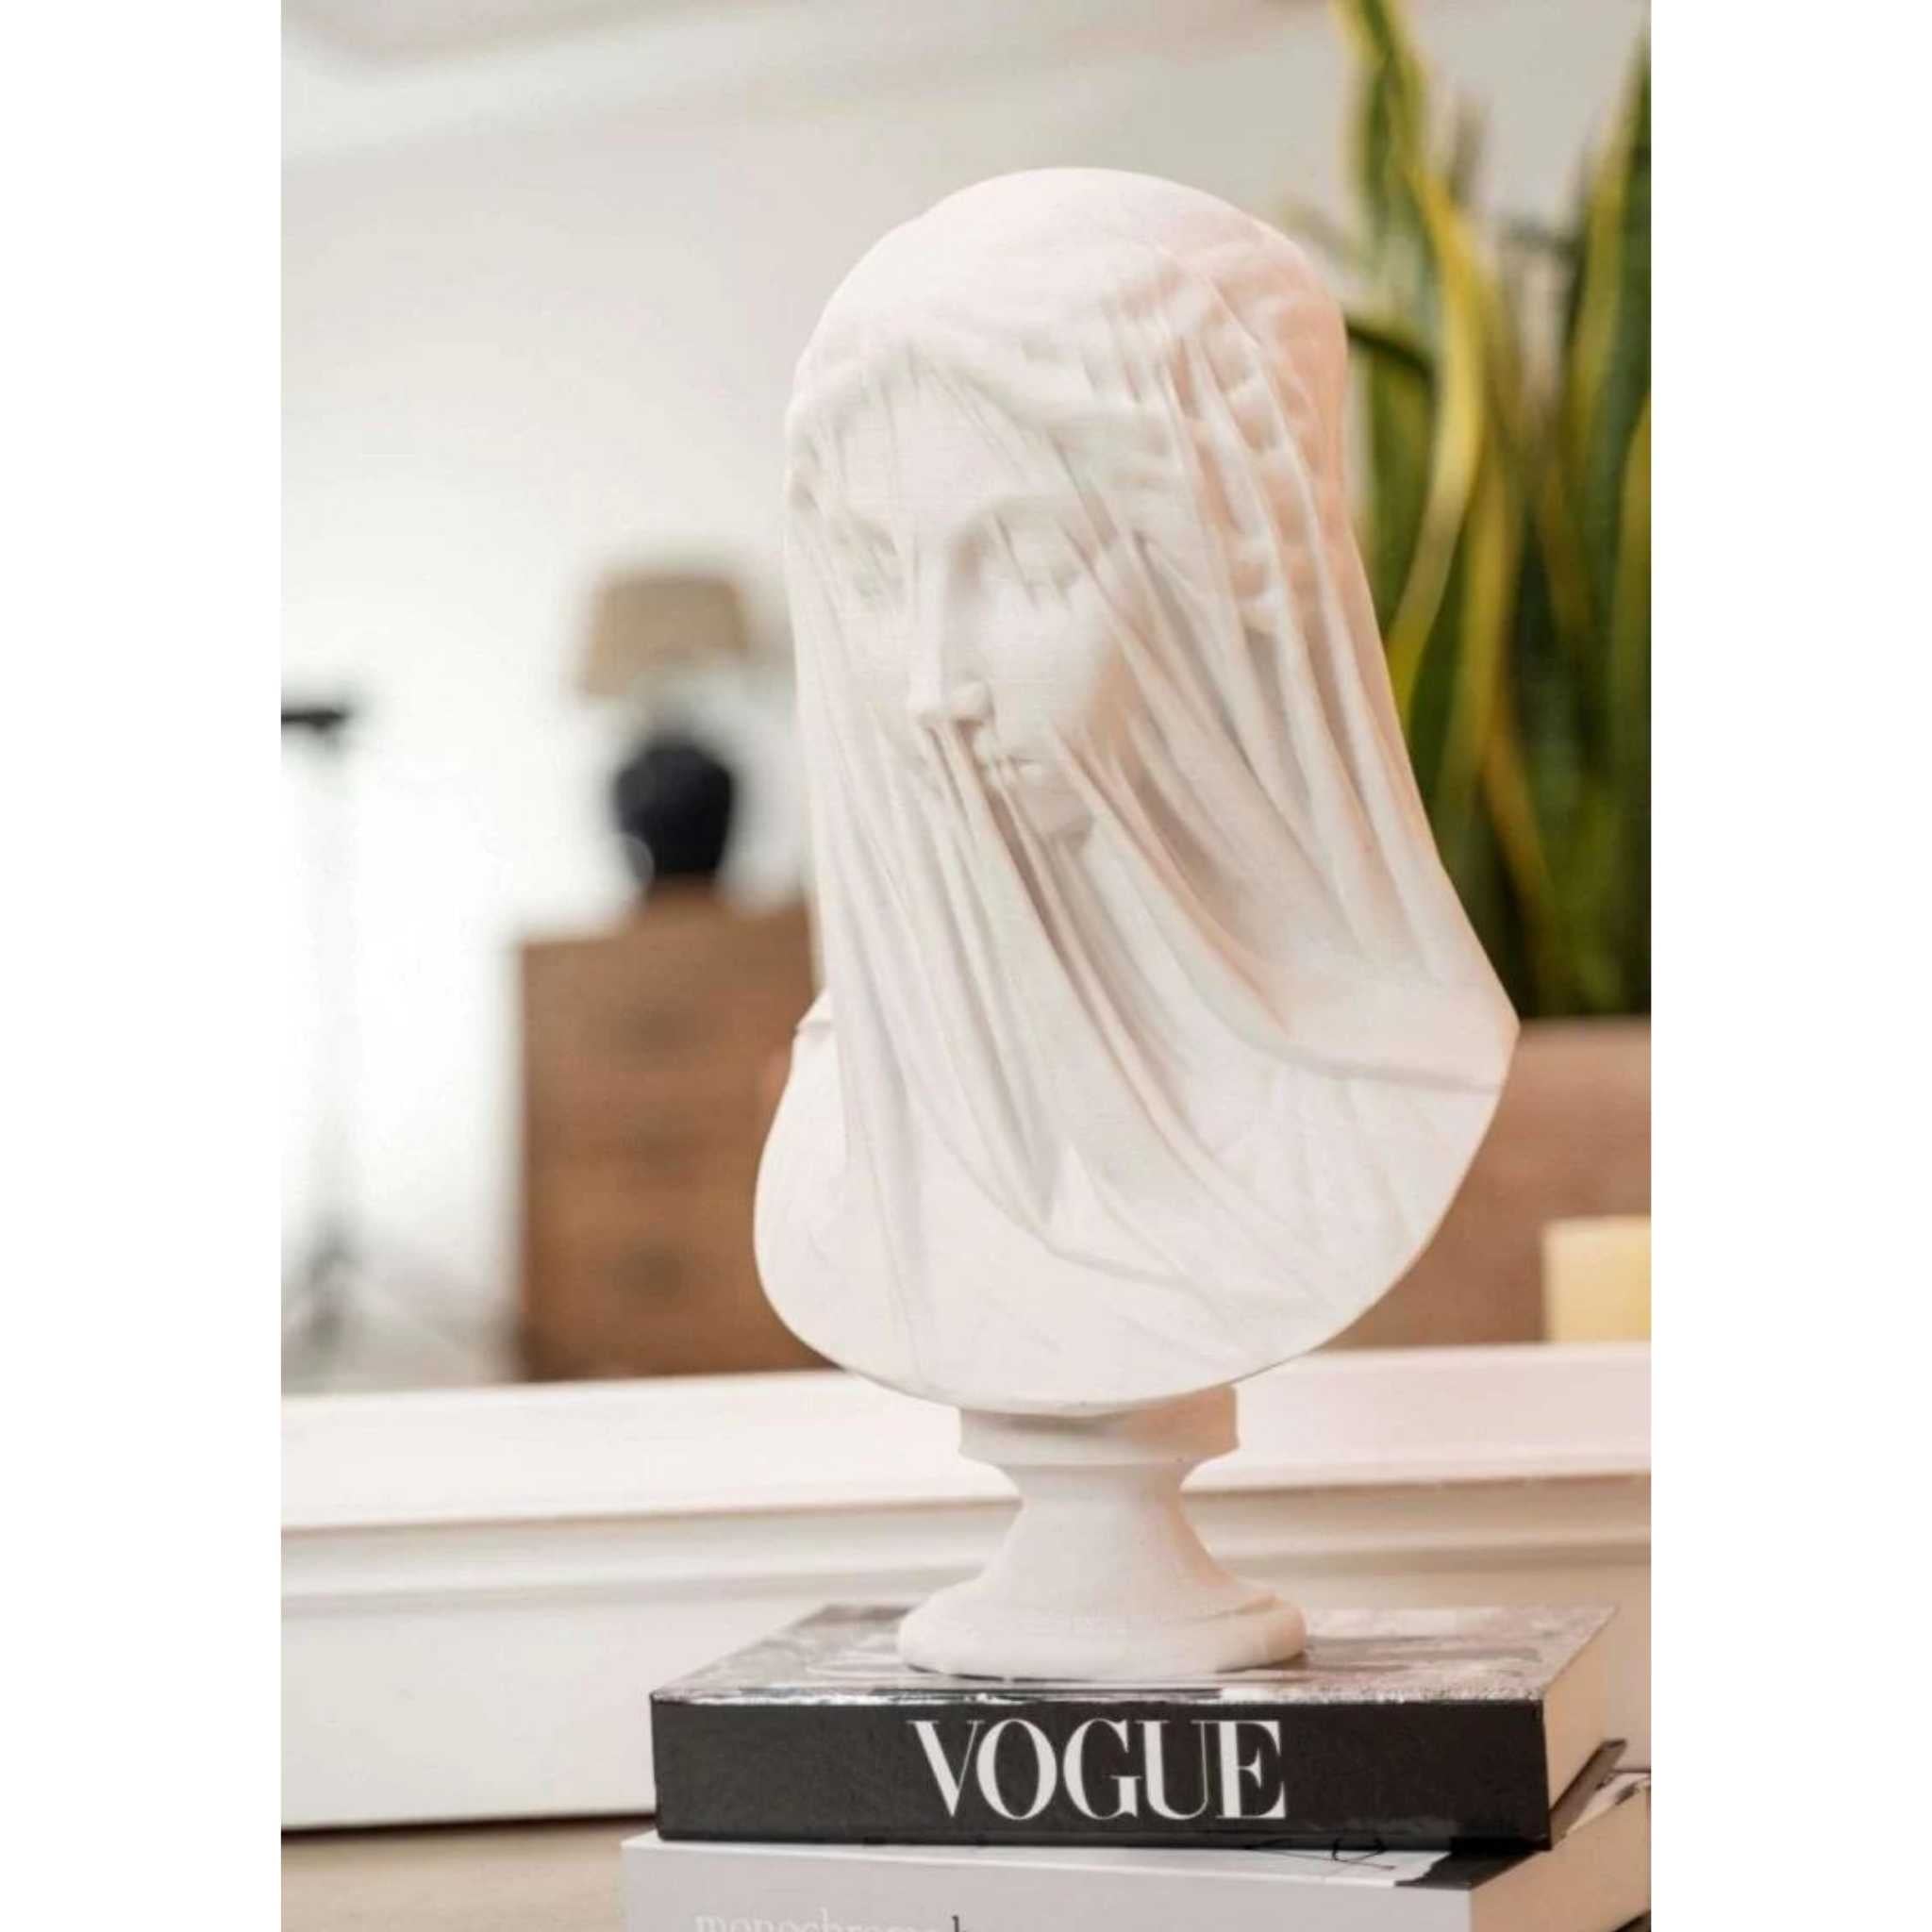 The Veiled Vestal Virgin